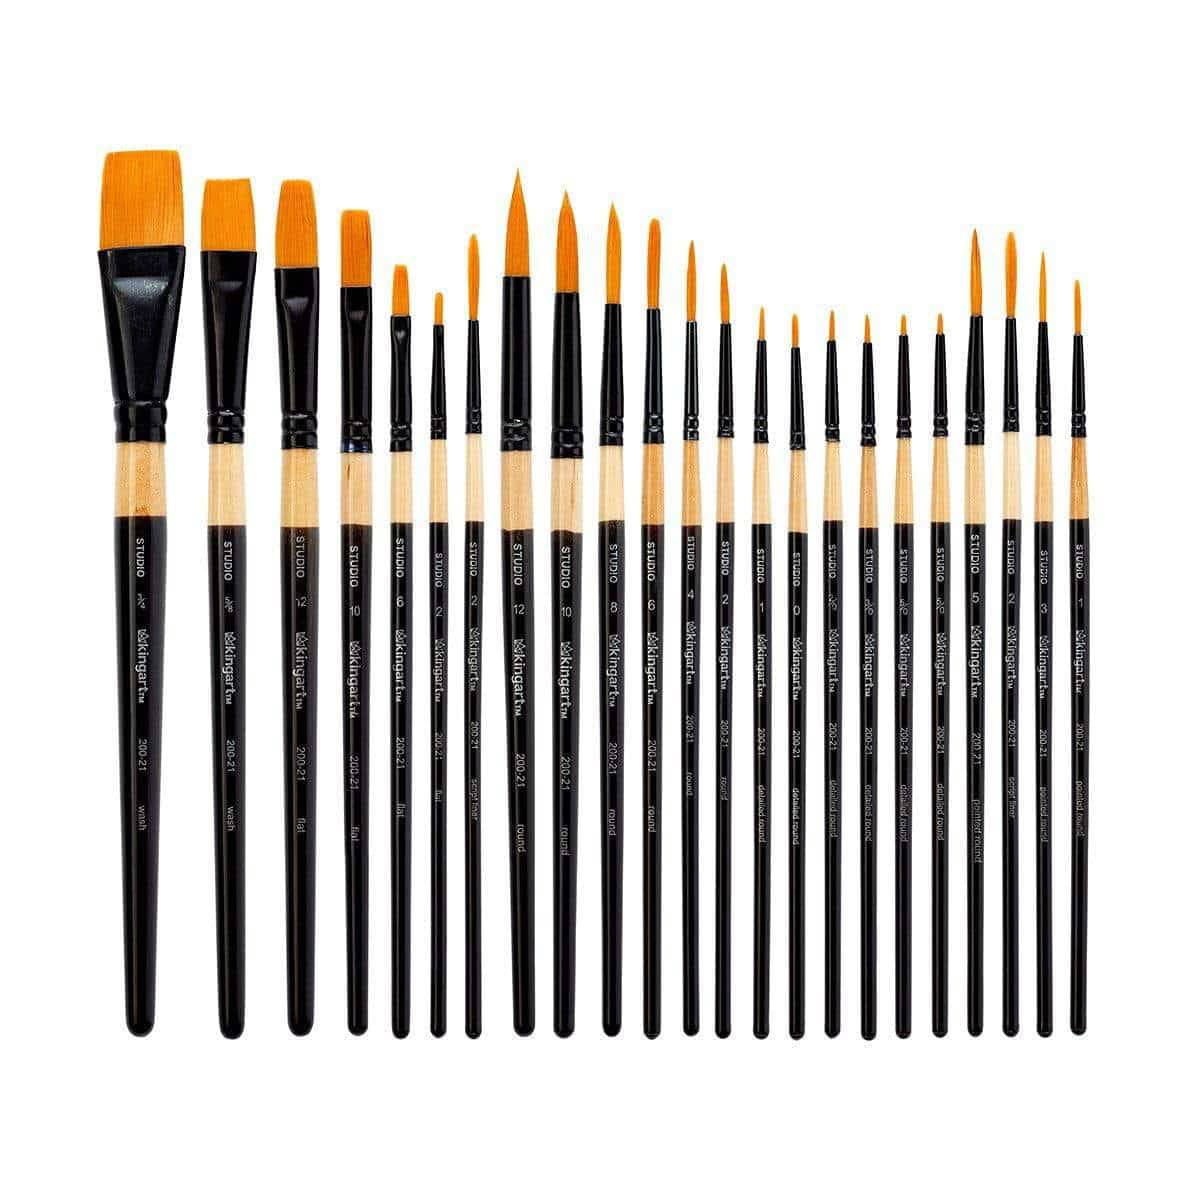 Kingart Paint Brush Set & Case 12/Pkg - Fine Art